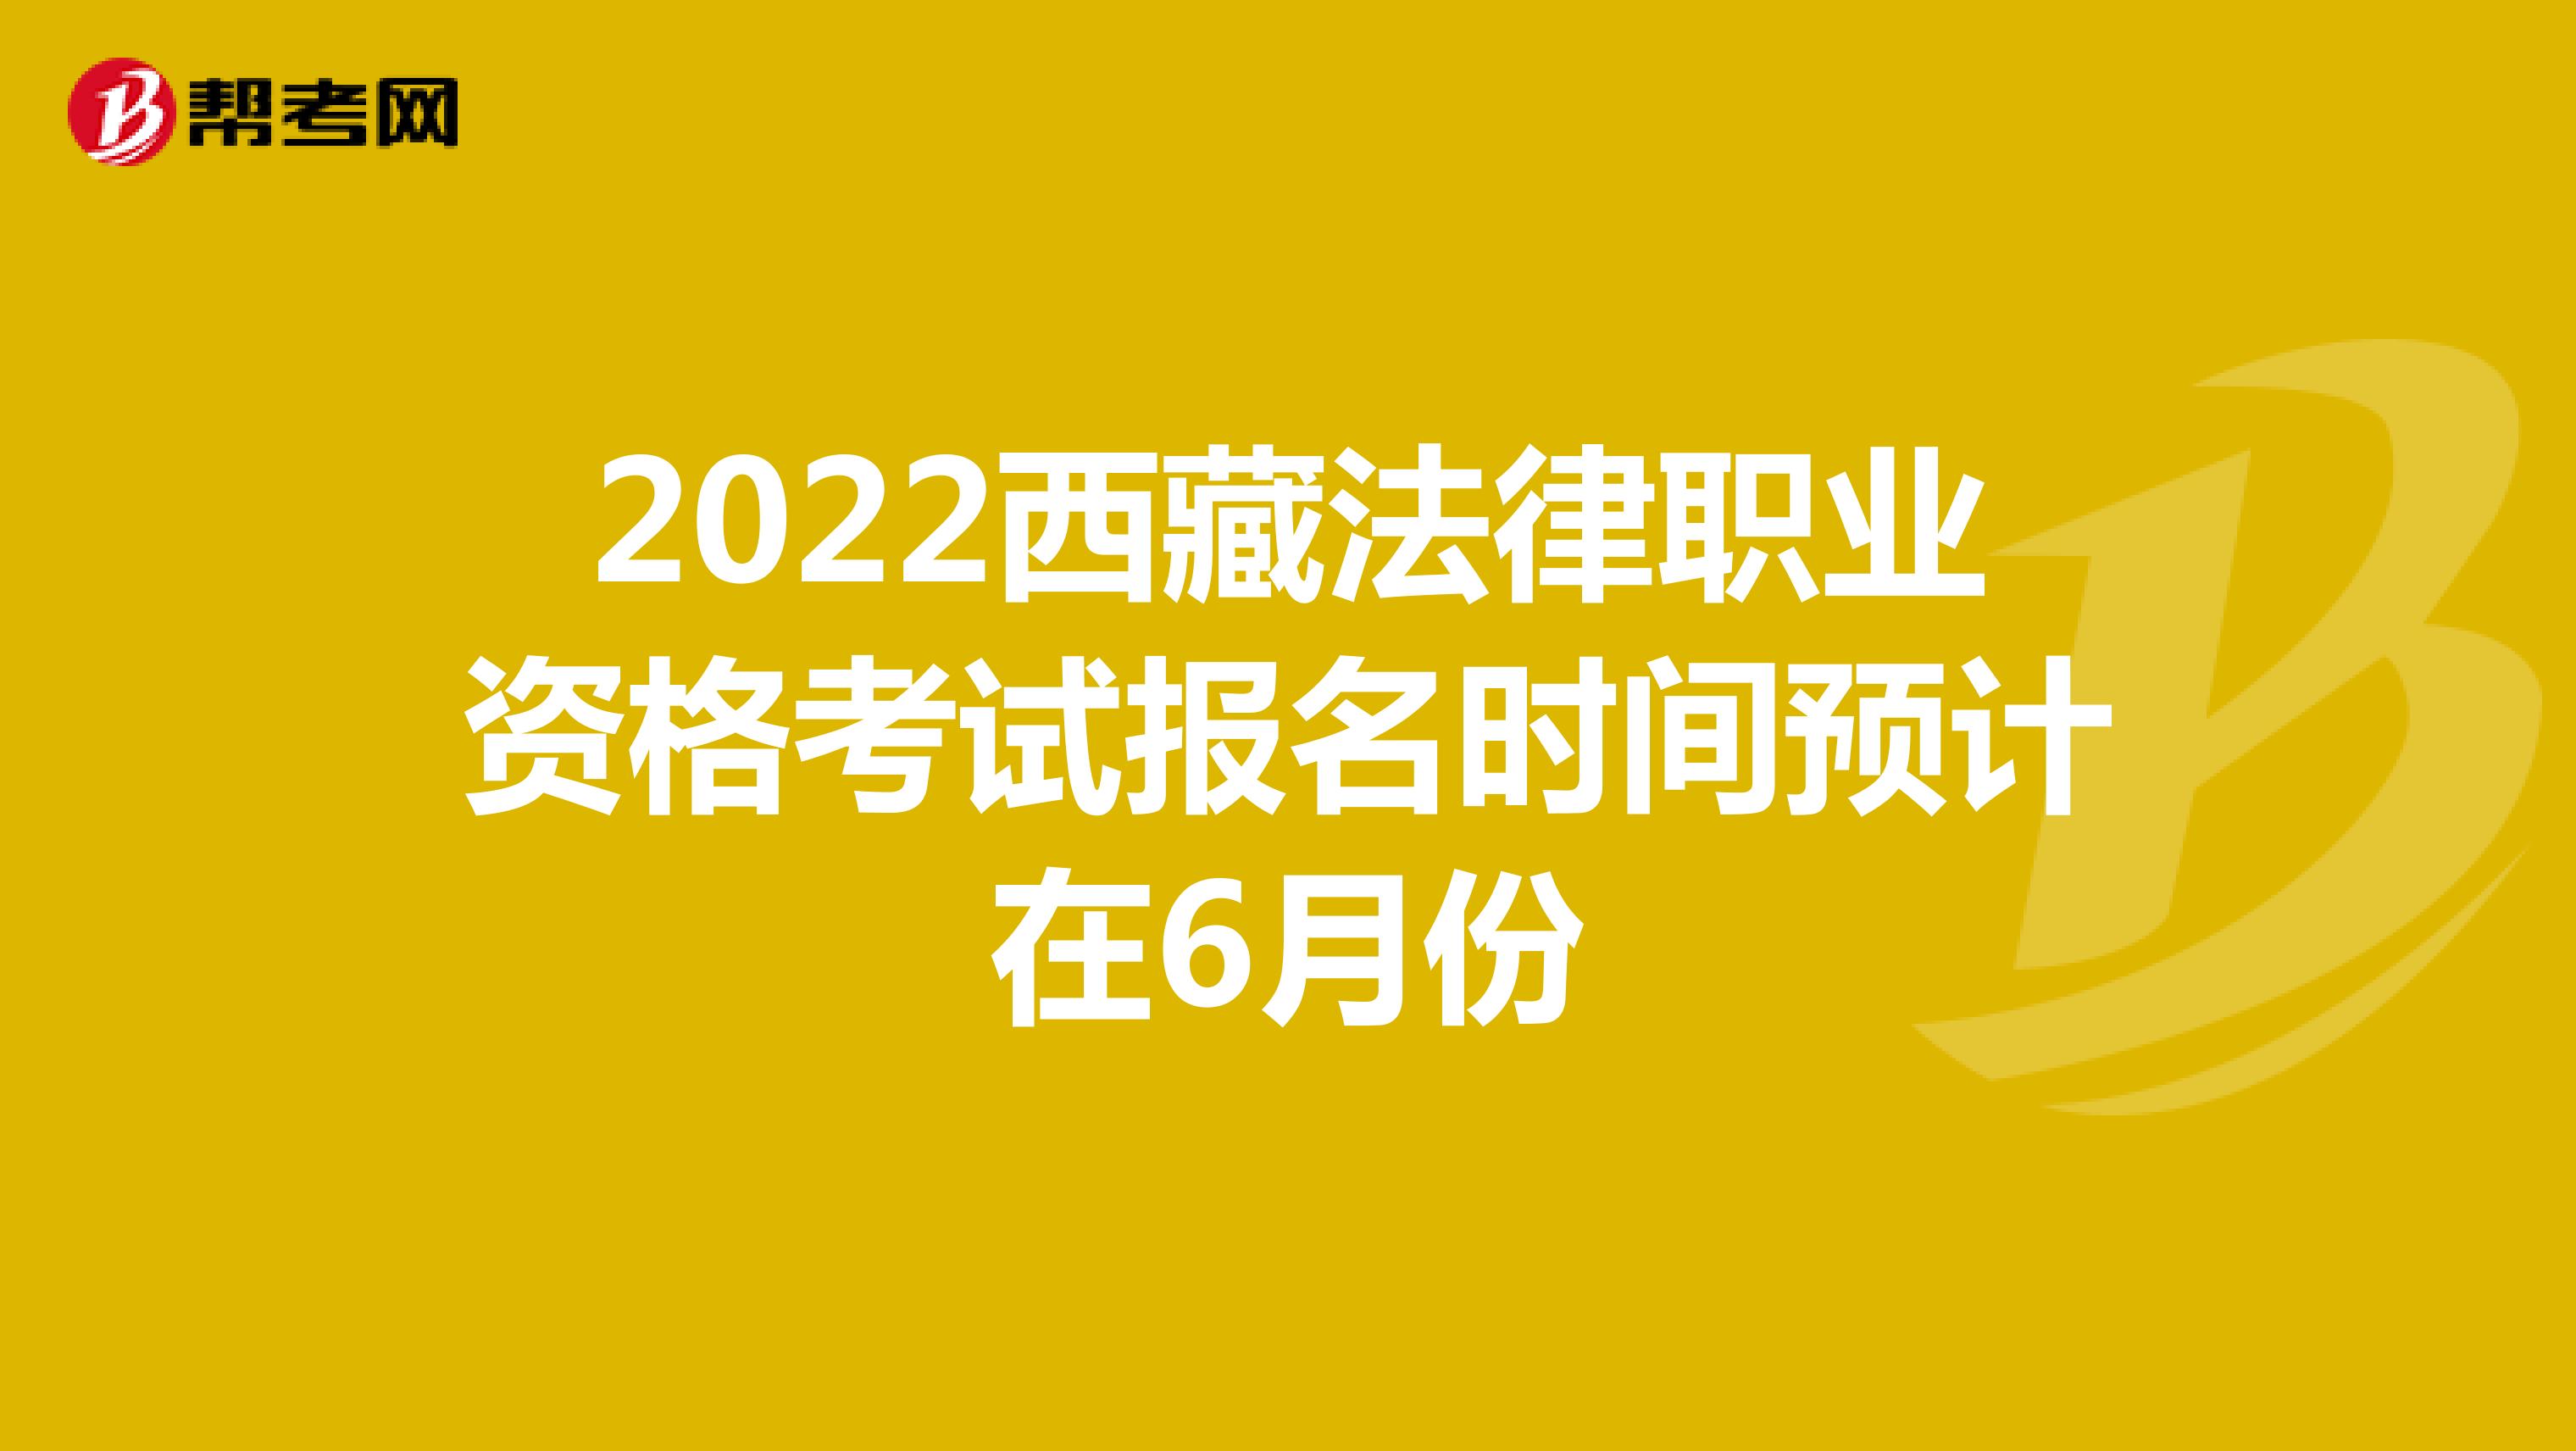 2022西藏法律职业资格考试报名时间预计在6月份